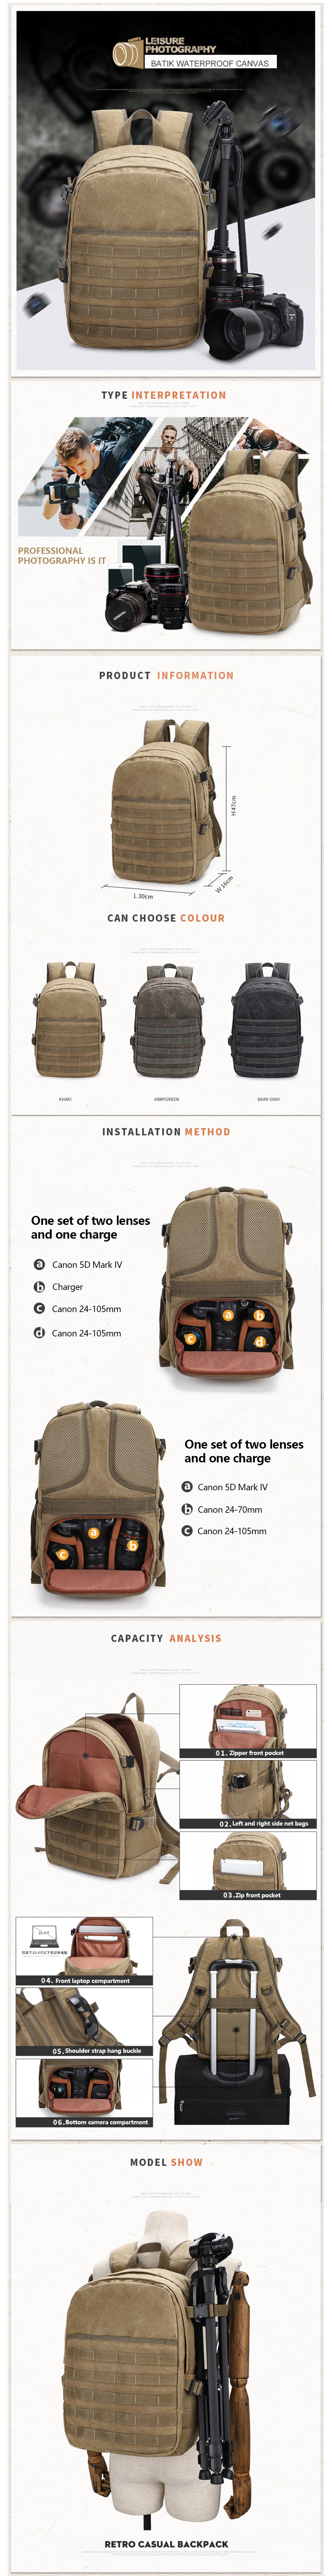 Details of Waterproof PUGB Camera Backpack